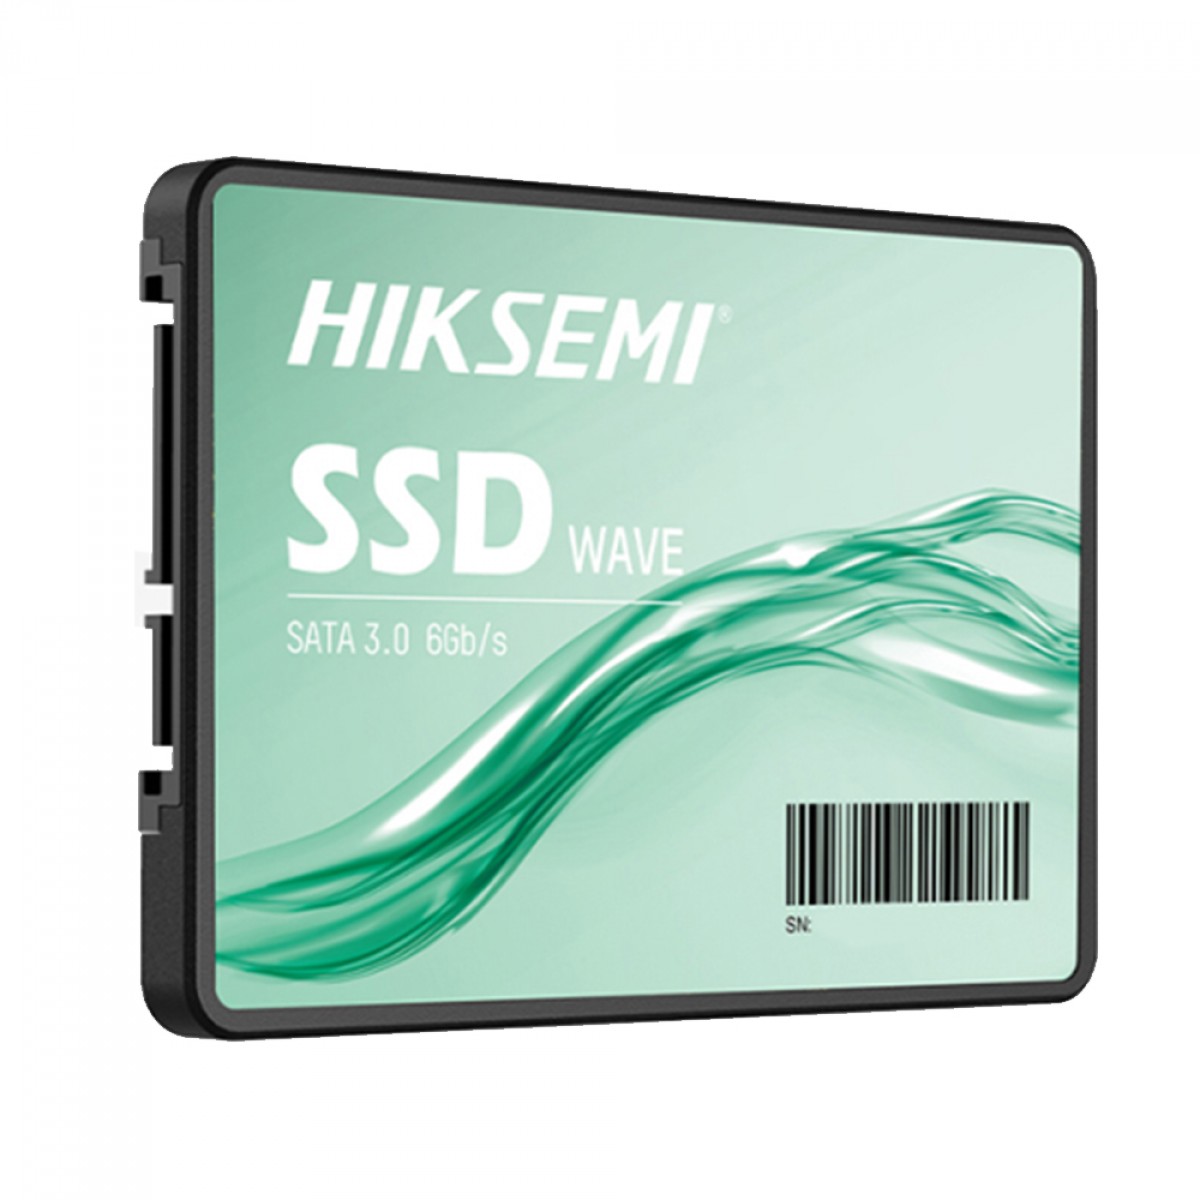 SSD Hiksemi Wave(S) 512GB, Sata III, Leitura 530MBs e Gravação 450MBs, HS-SSD-WAVE(S) 512G